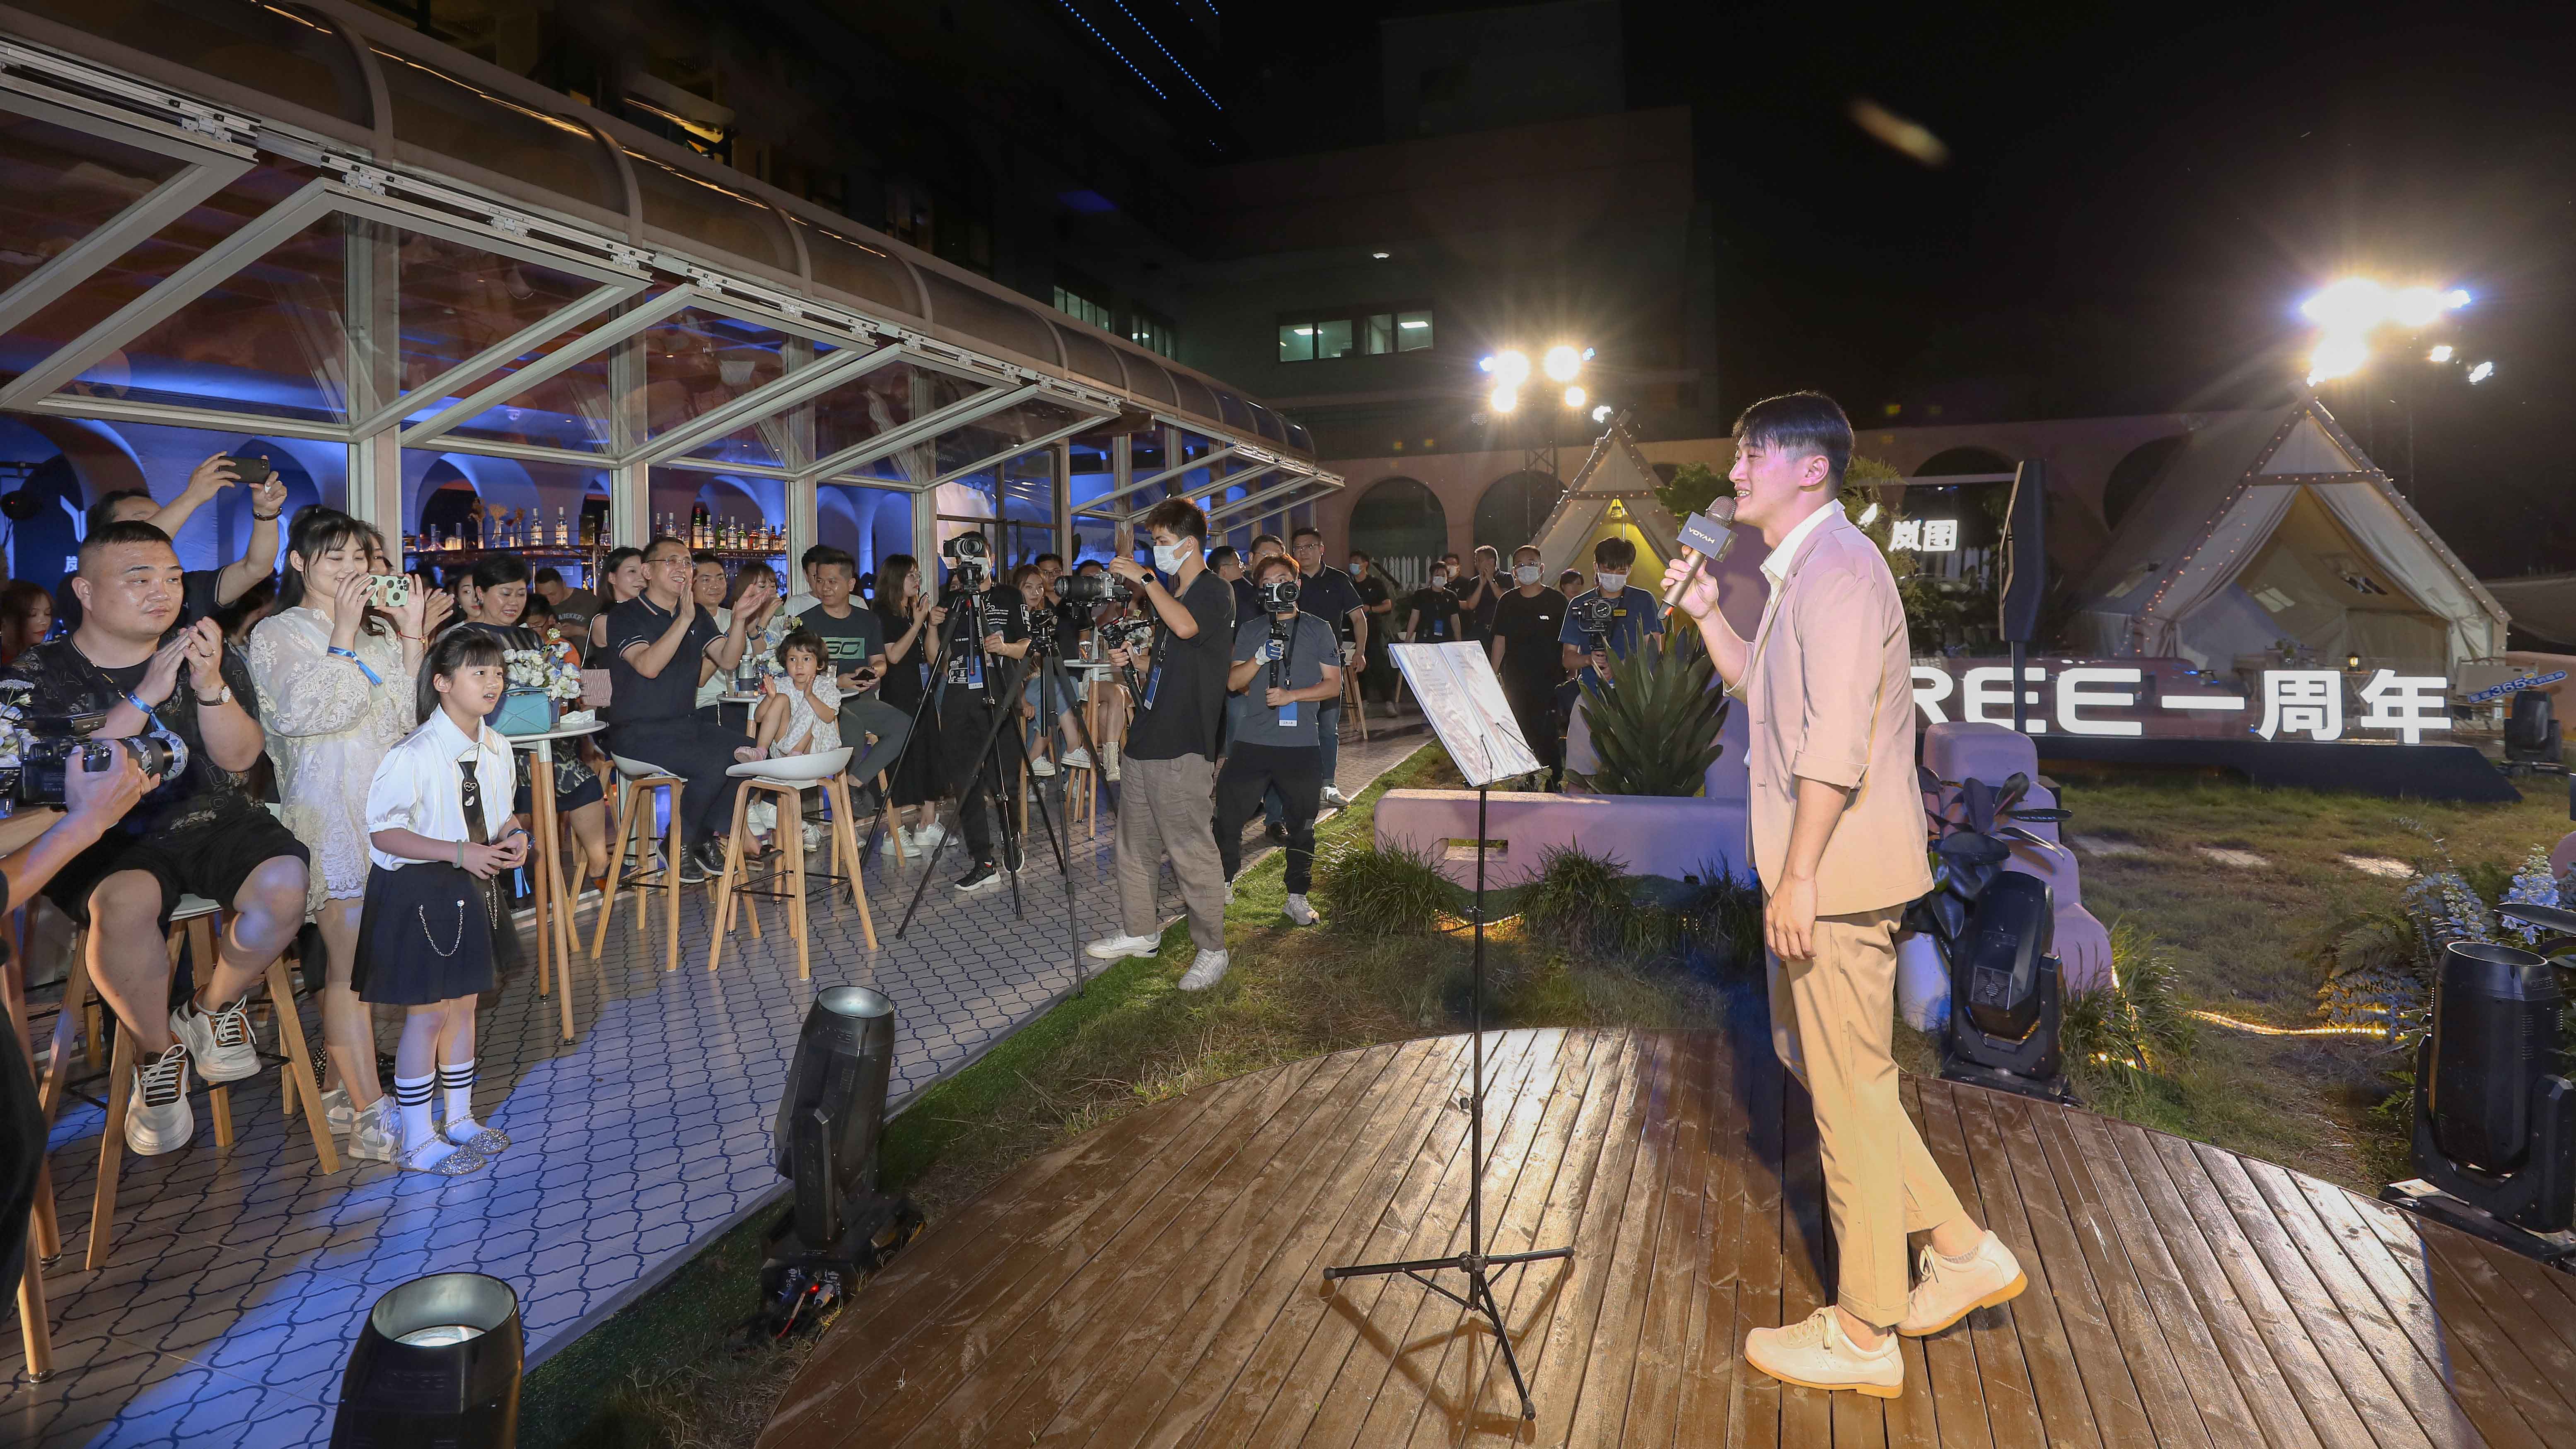 岚图FREE一周年举办“自由探索”用户共创会  暨唱响港乐金曲致敬香港回归25周年